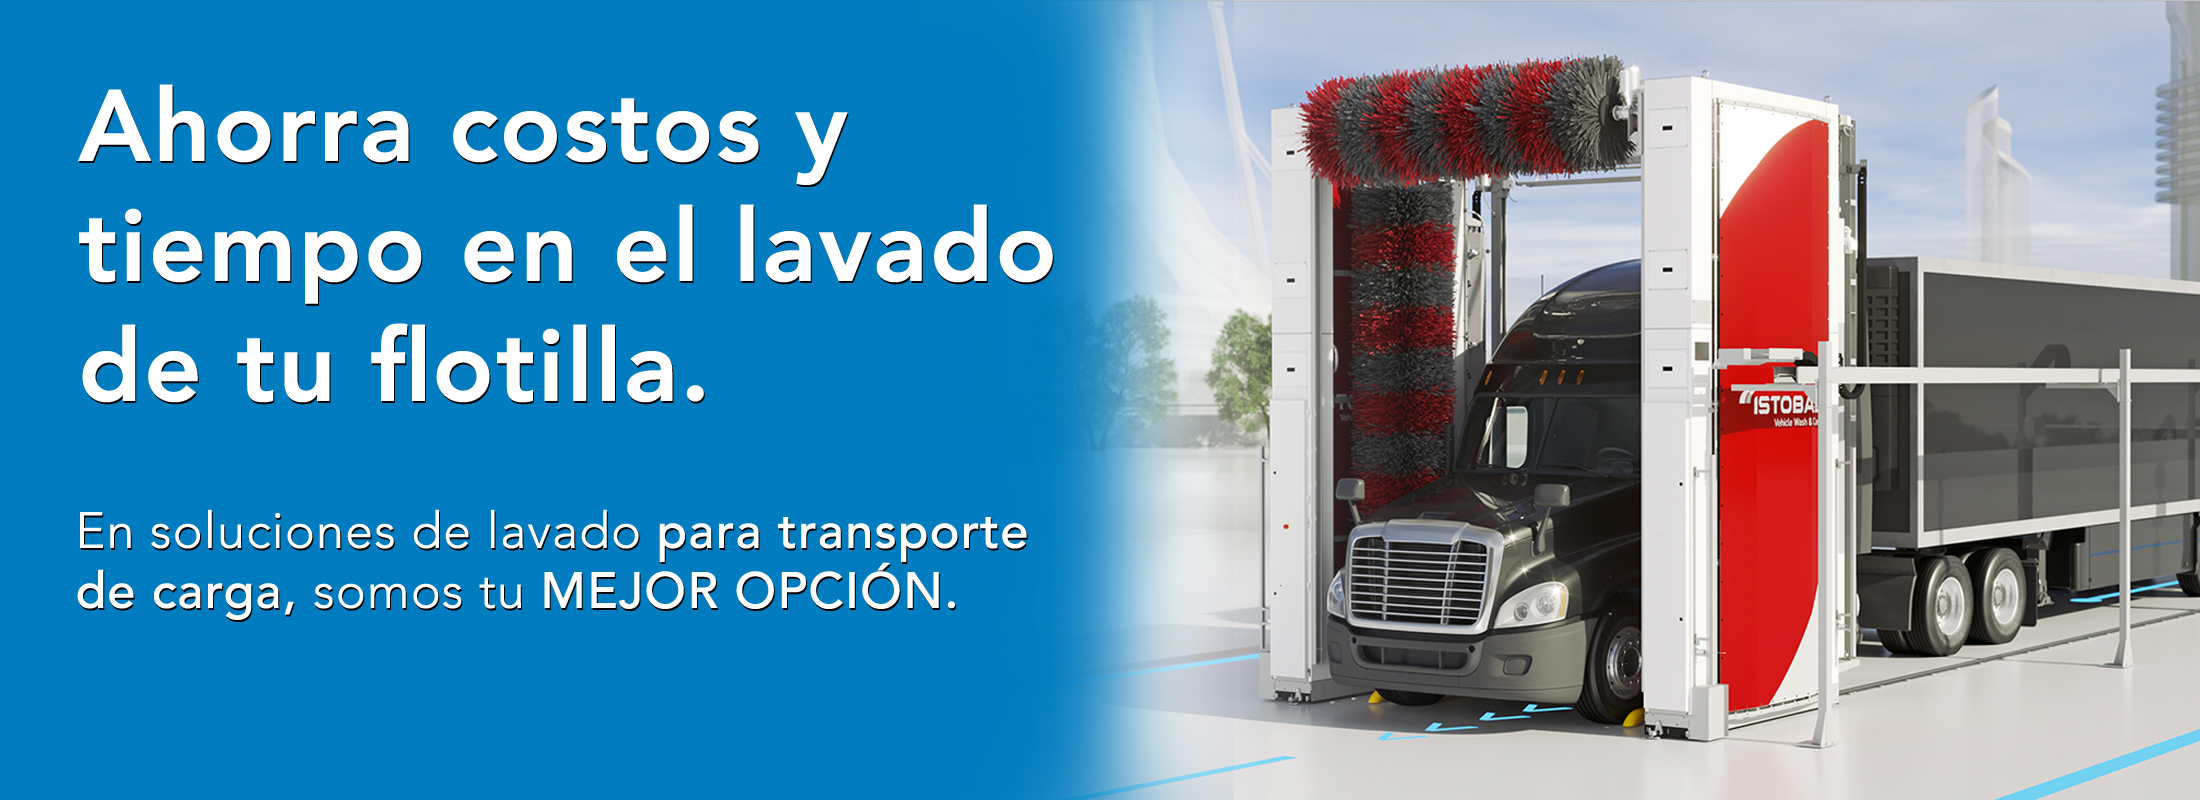 Inter Ibérica - Soluciones para Empresas de Transporte de Carga